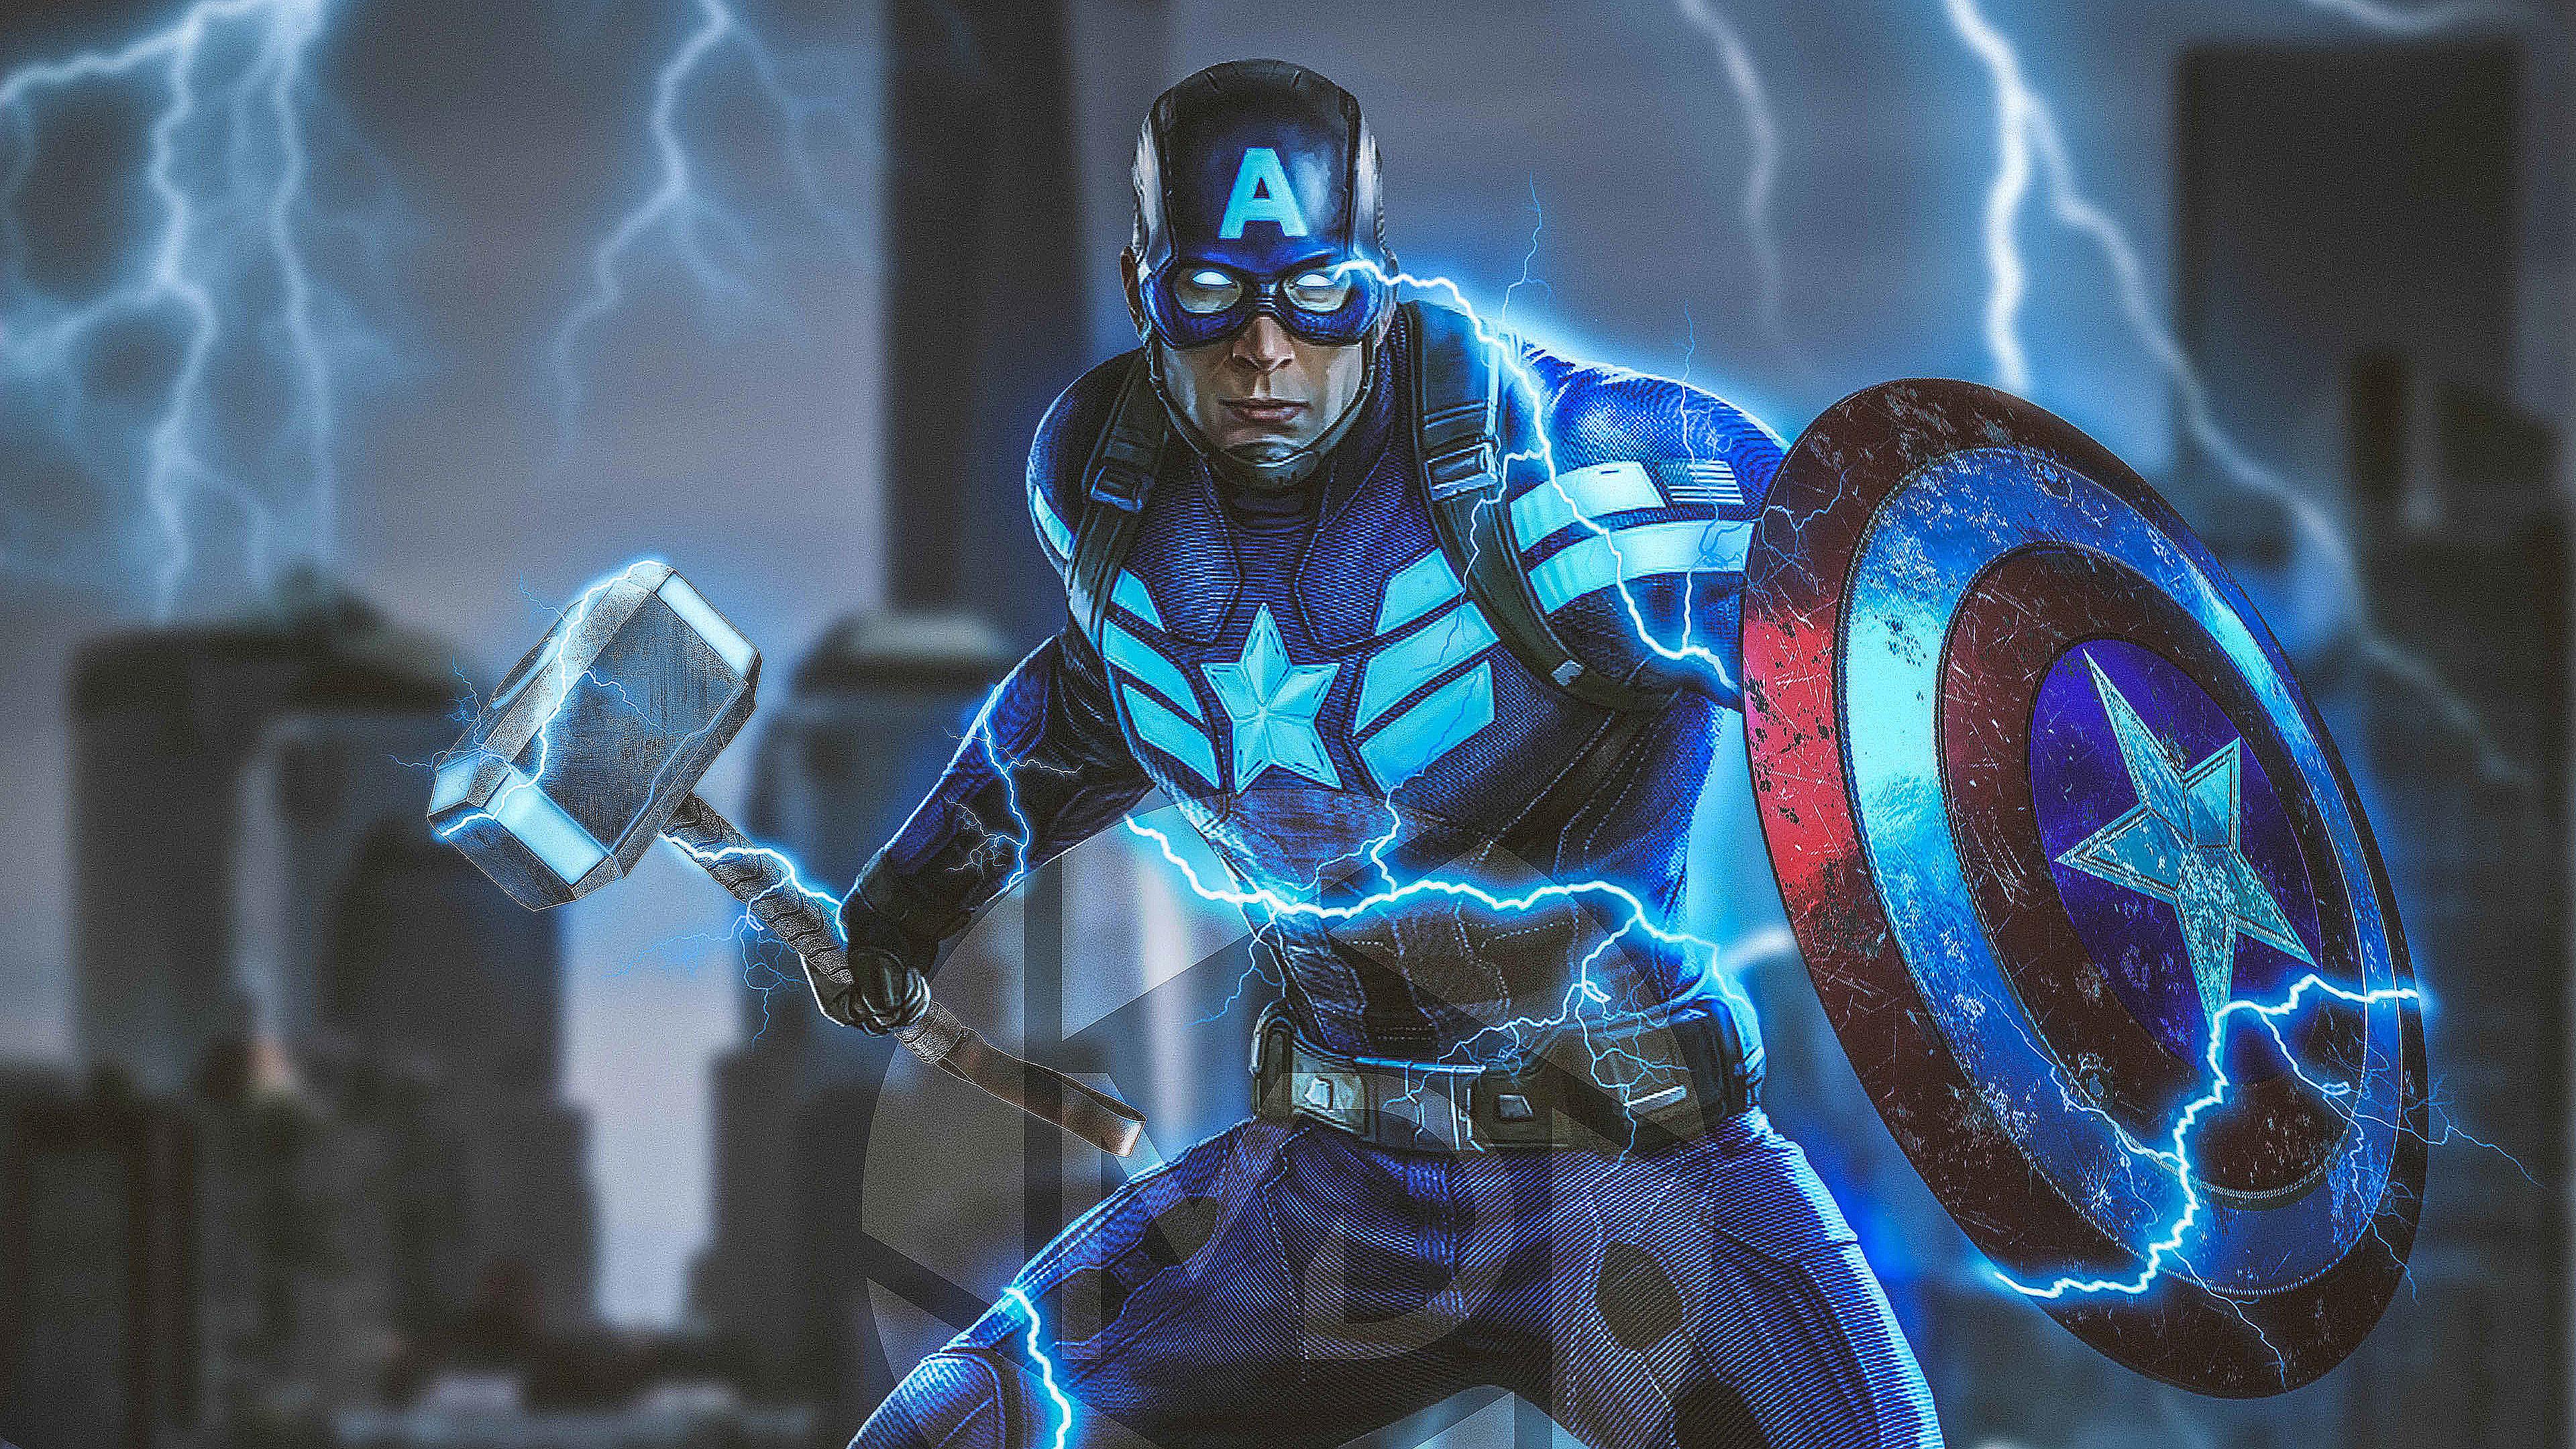 3840 x 2160 · jpeg - Captain America Mjolnir Avengers Endgame 4k 2019 superheroes wallpapers ...